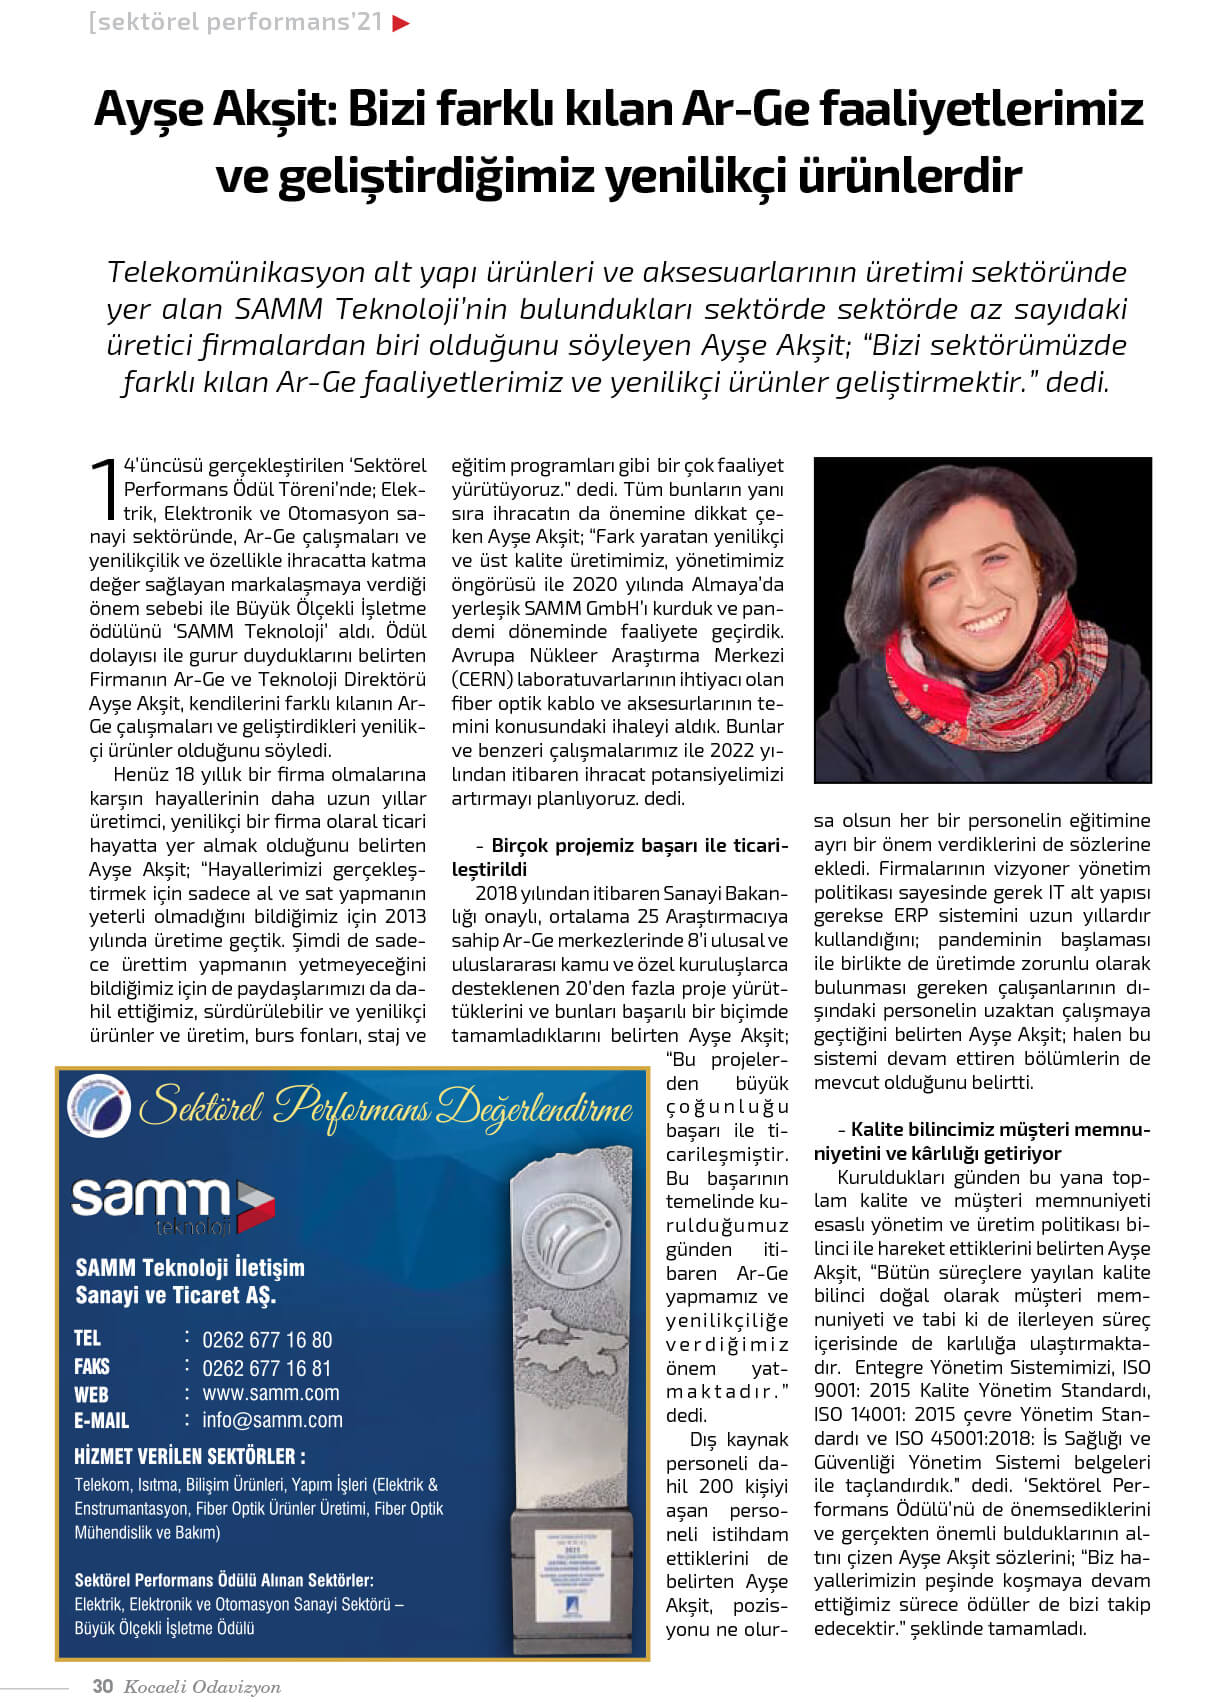 Ayşe Akşit, interviewt vom KSO Odavizyon Magazine!